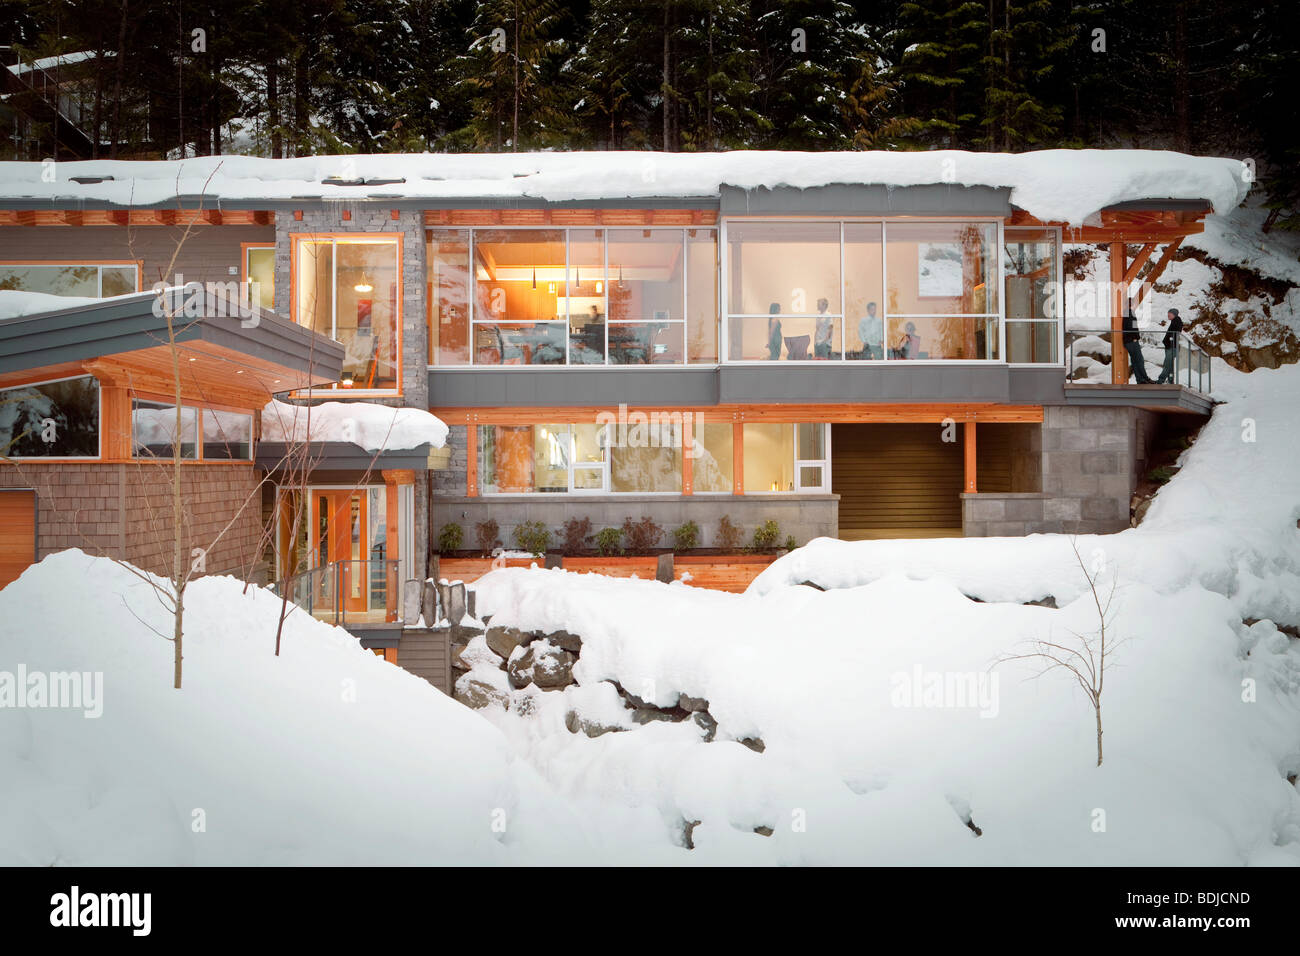 Vue extérieure de l'intérieur de la maison Alpine en hiver, Whistler, British Columbia, Canada Banque D'Images